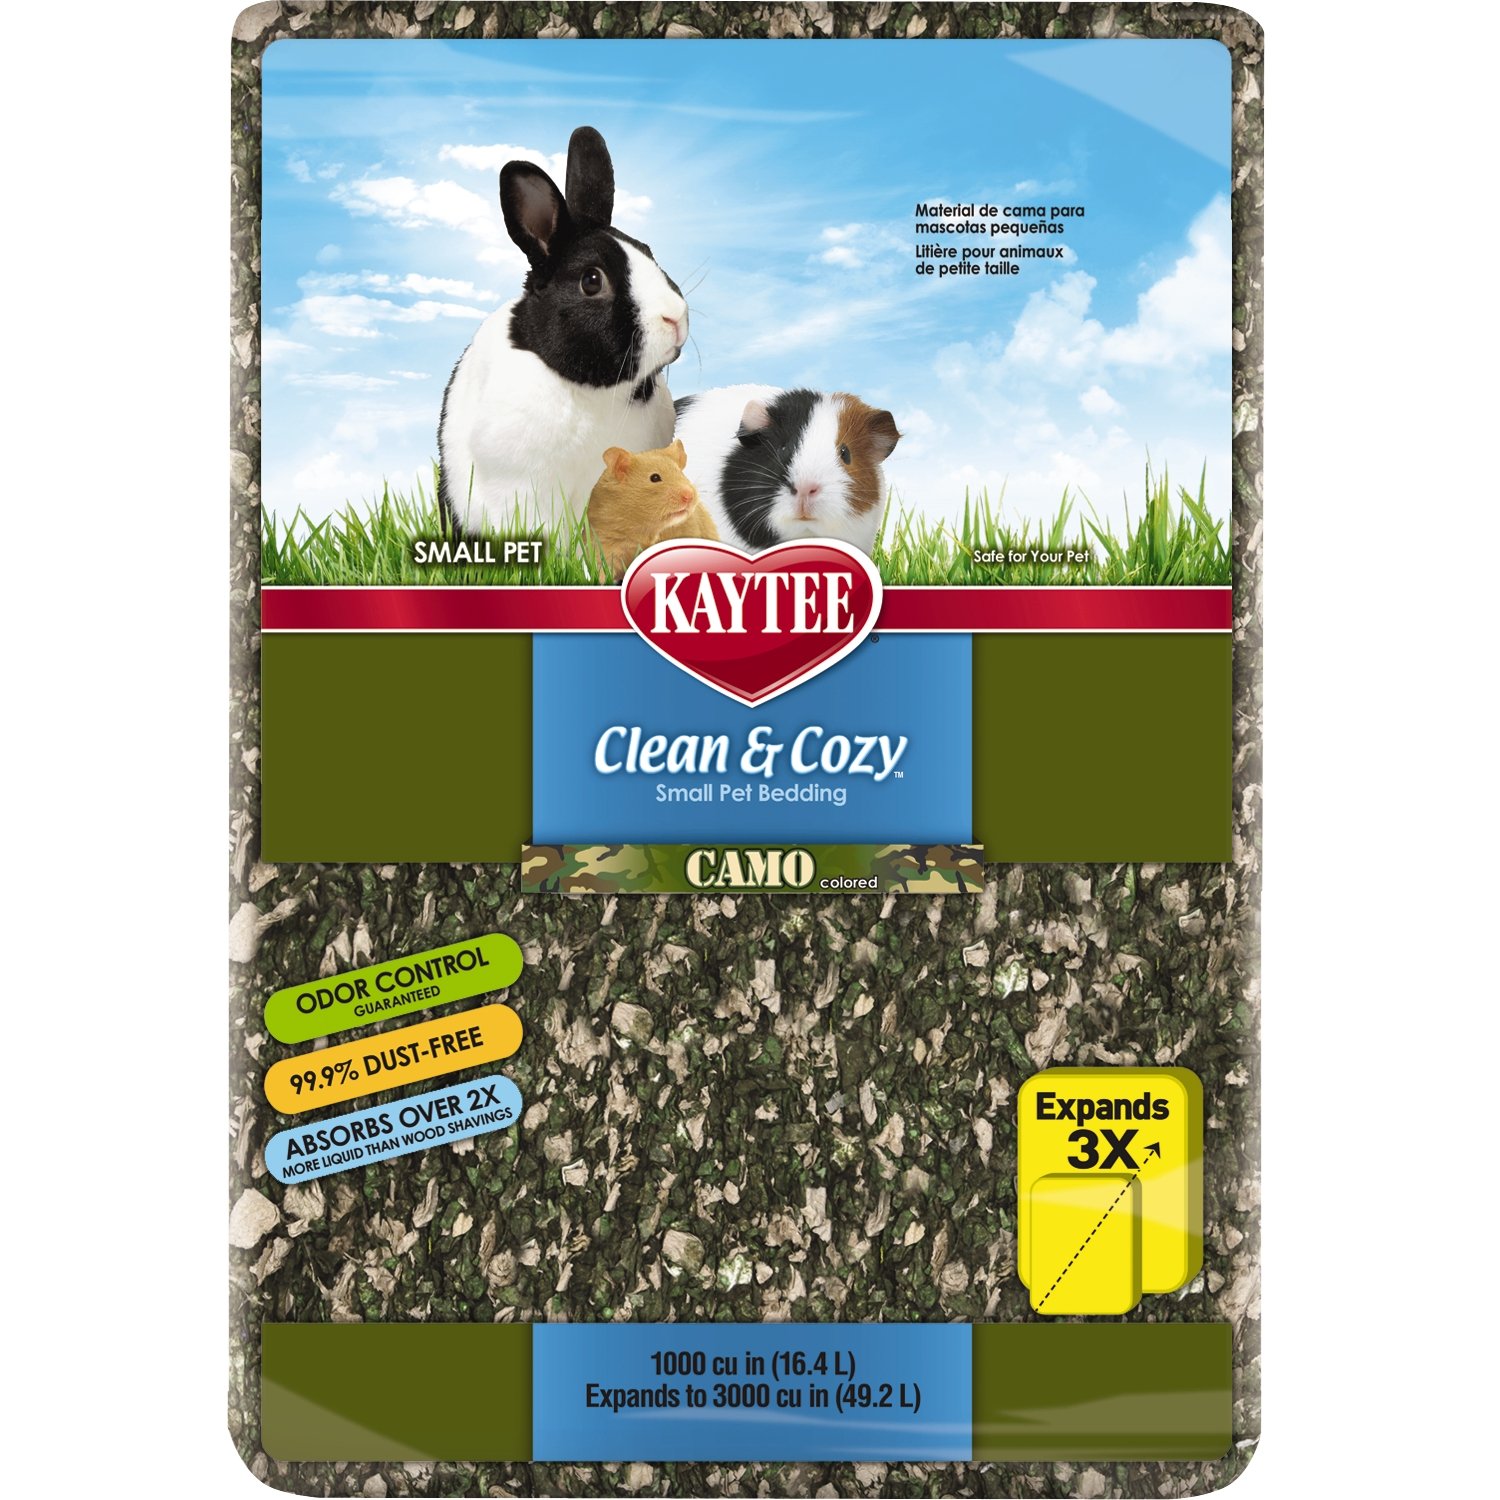 Kaytee Clean Cozy Super saugfähige Papierbettwäsche für Haustiere von Kaytee